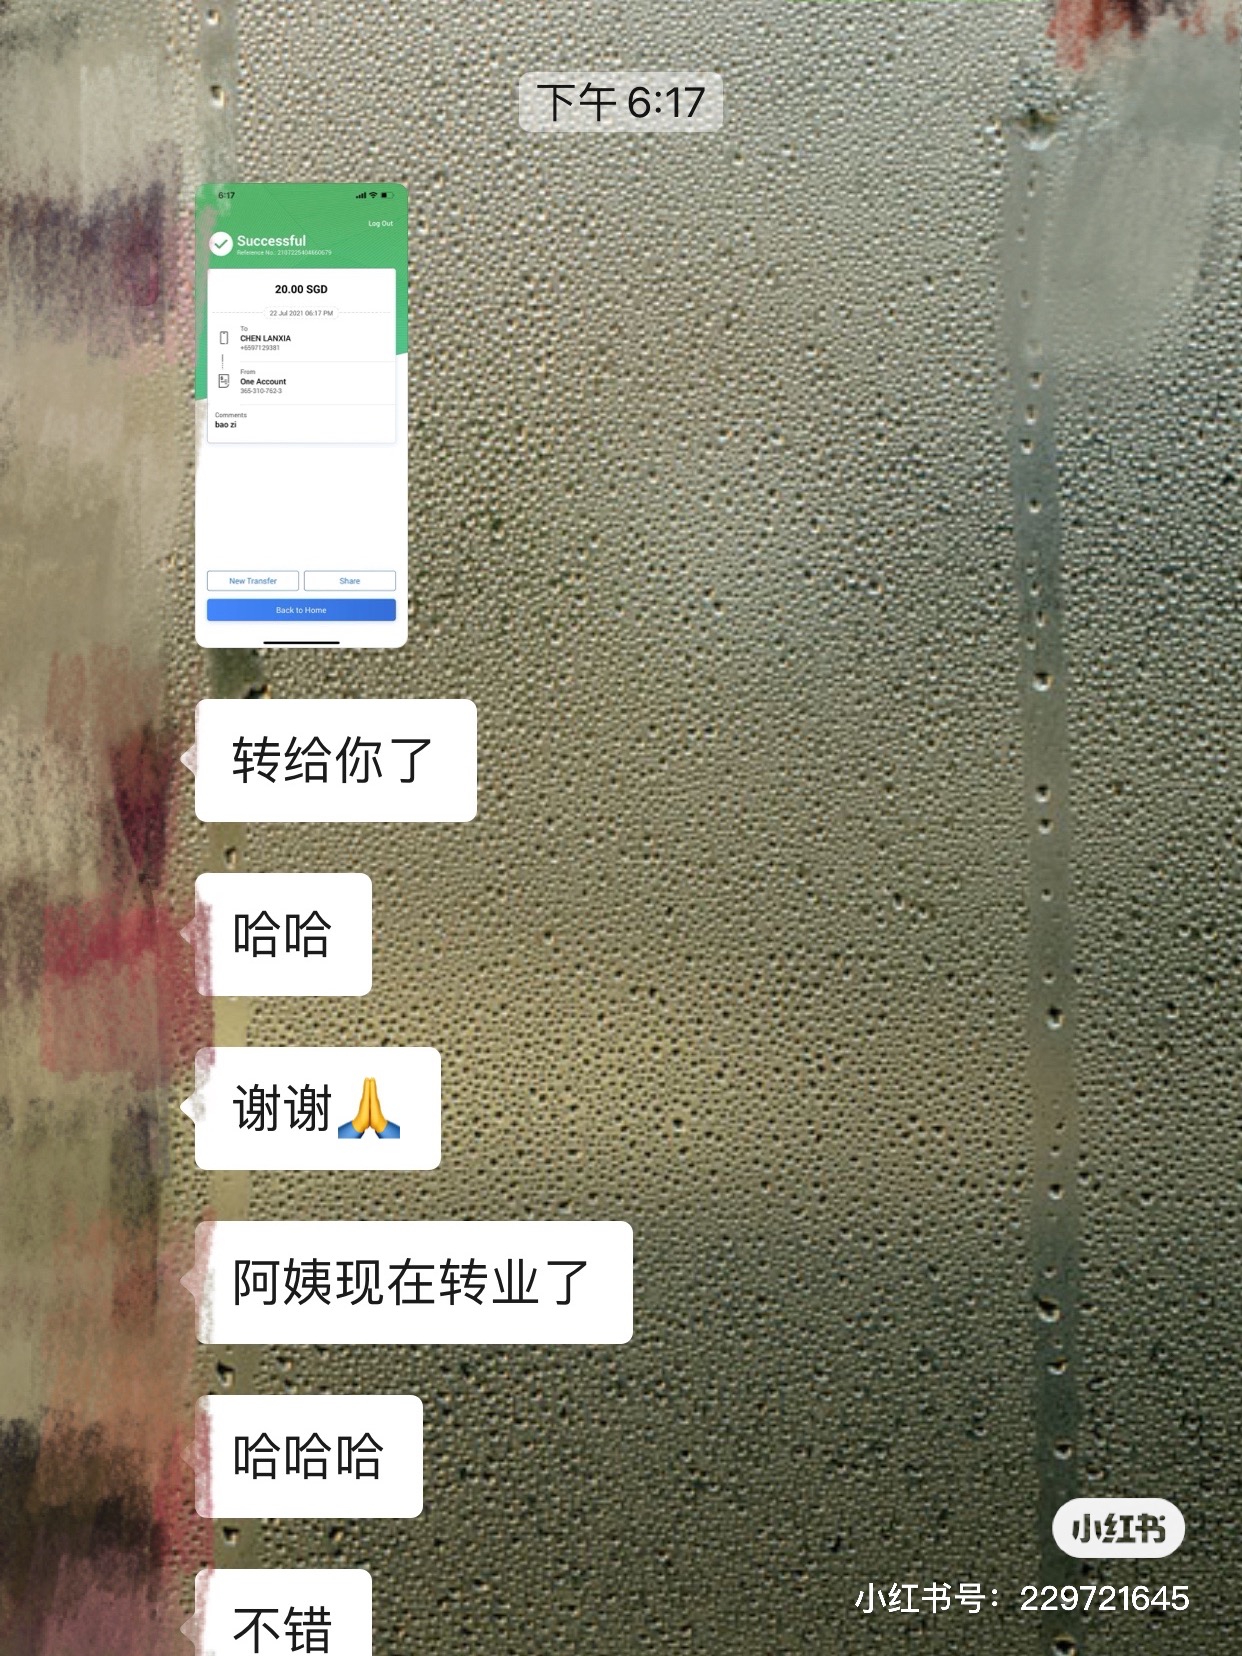 WeChat Image_20210722183738.jpg